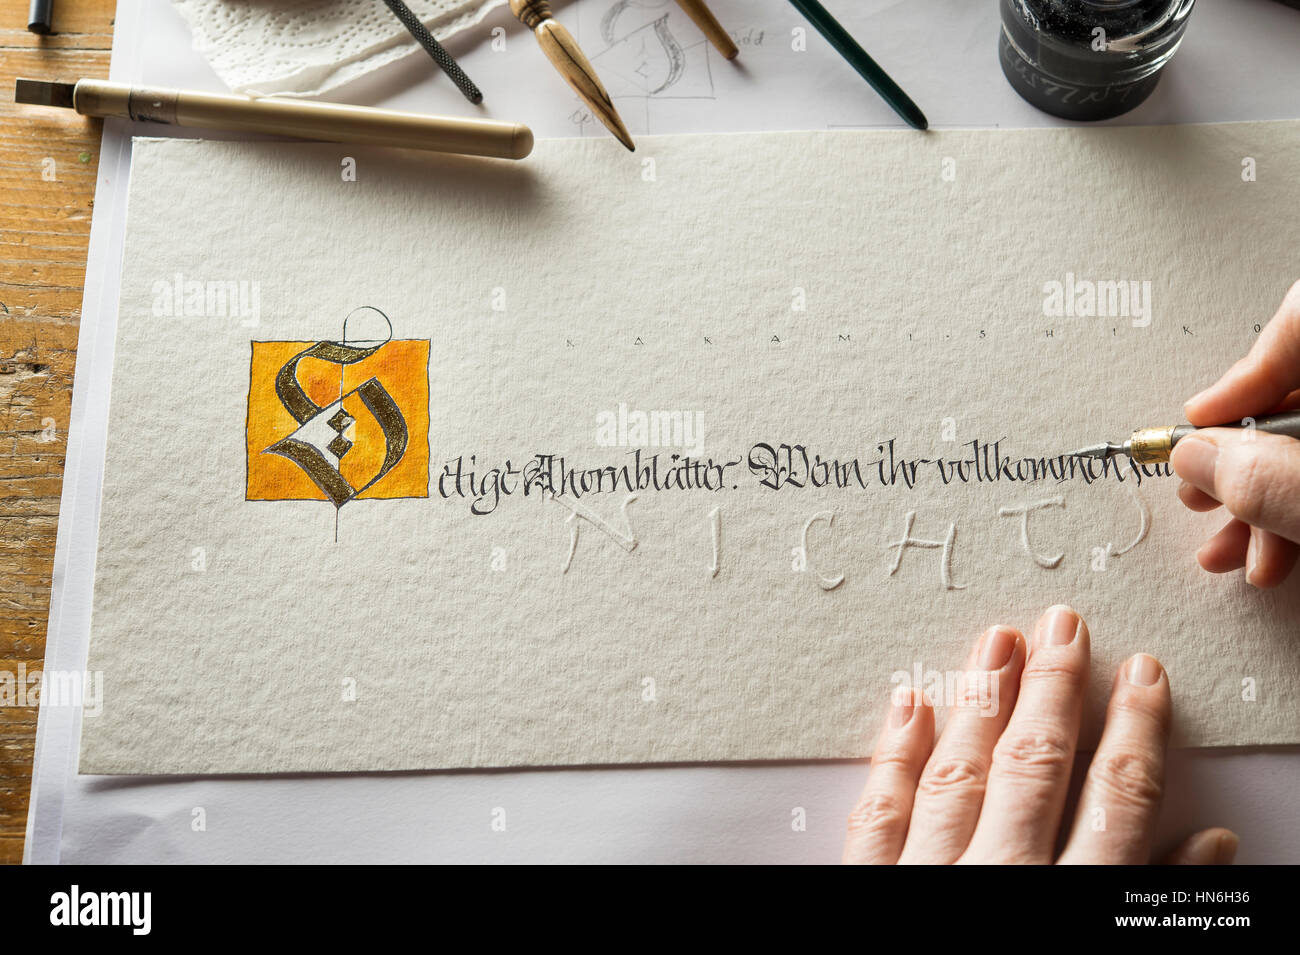 Kalligraphie Studio Hand schreibt Text mit Tusche, Stift und Feder